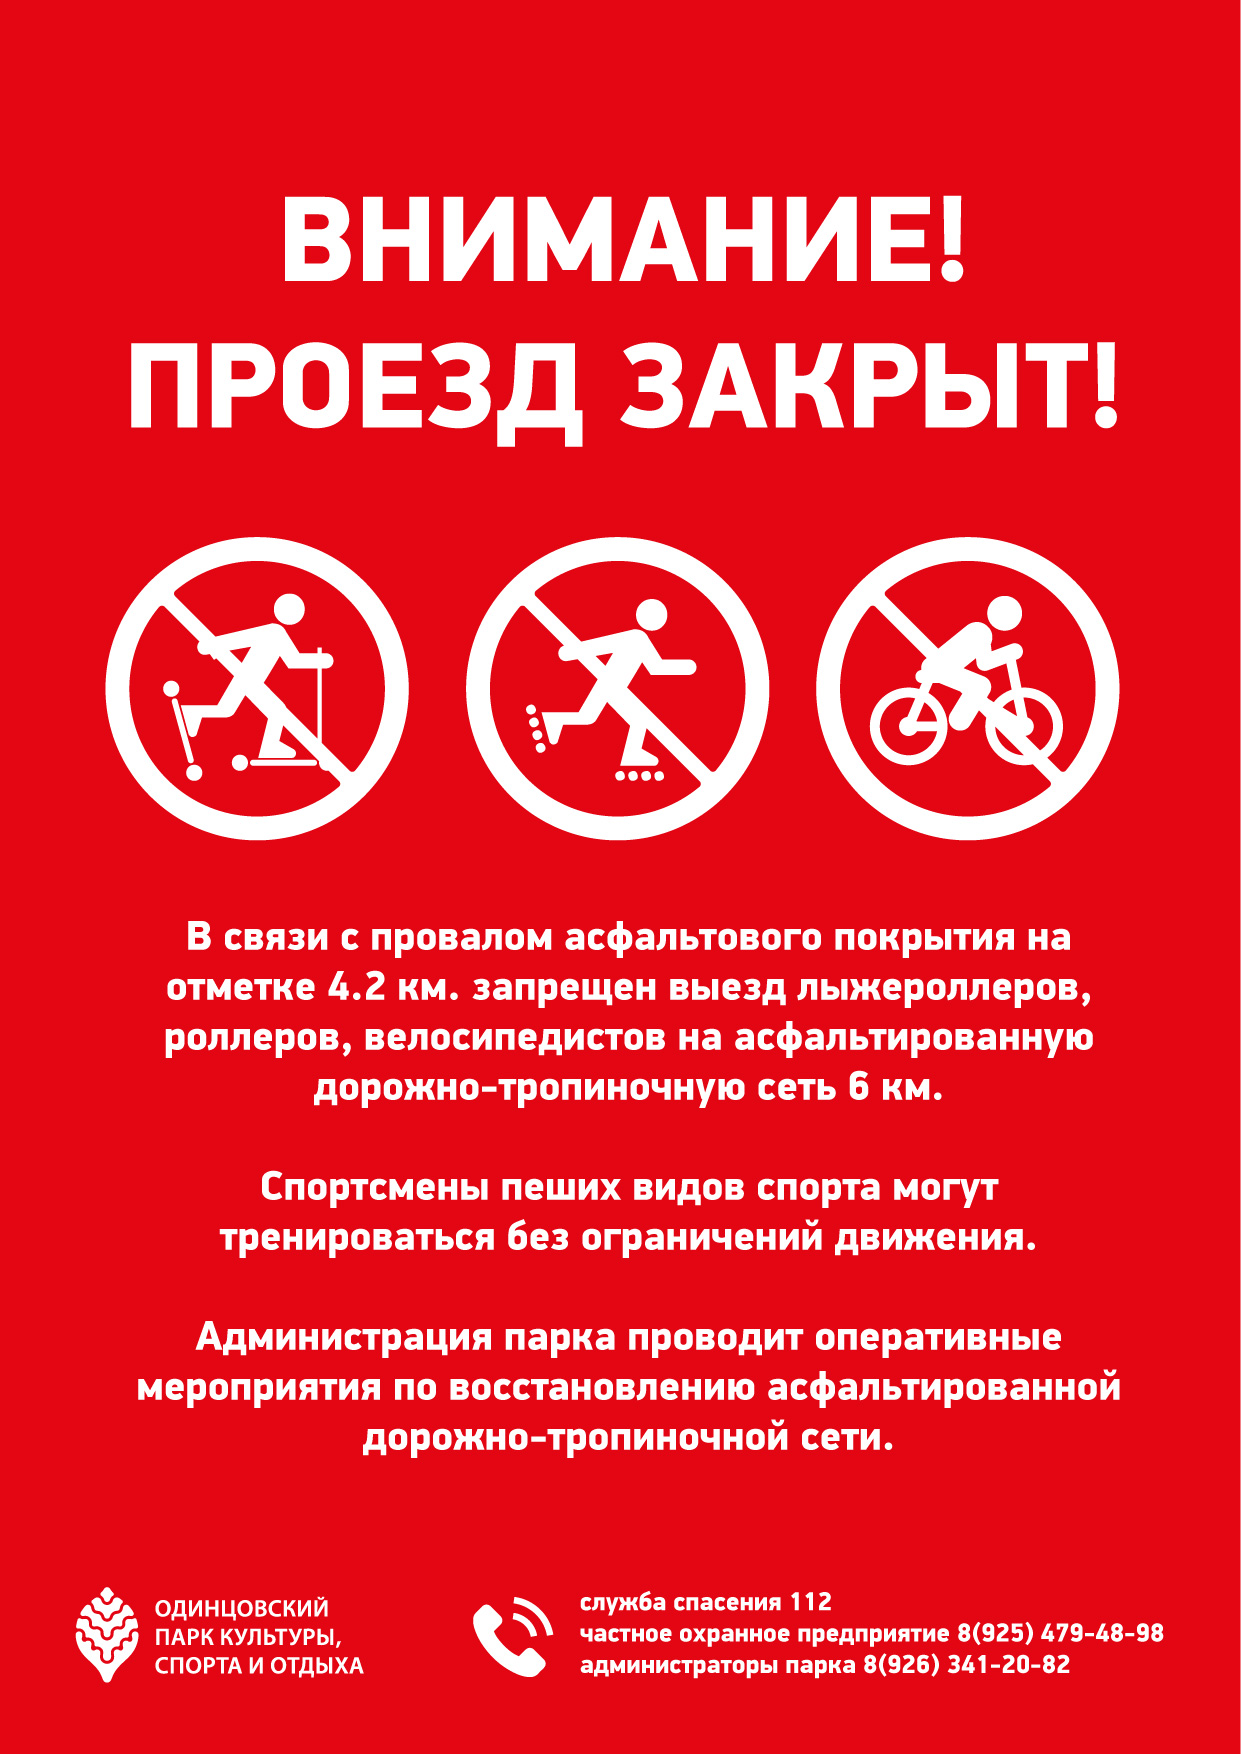 Одинцовский парк культуры, спорта и отдыха | запрет на движение роллеров, лыжероллеров и велосипедистов